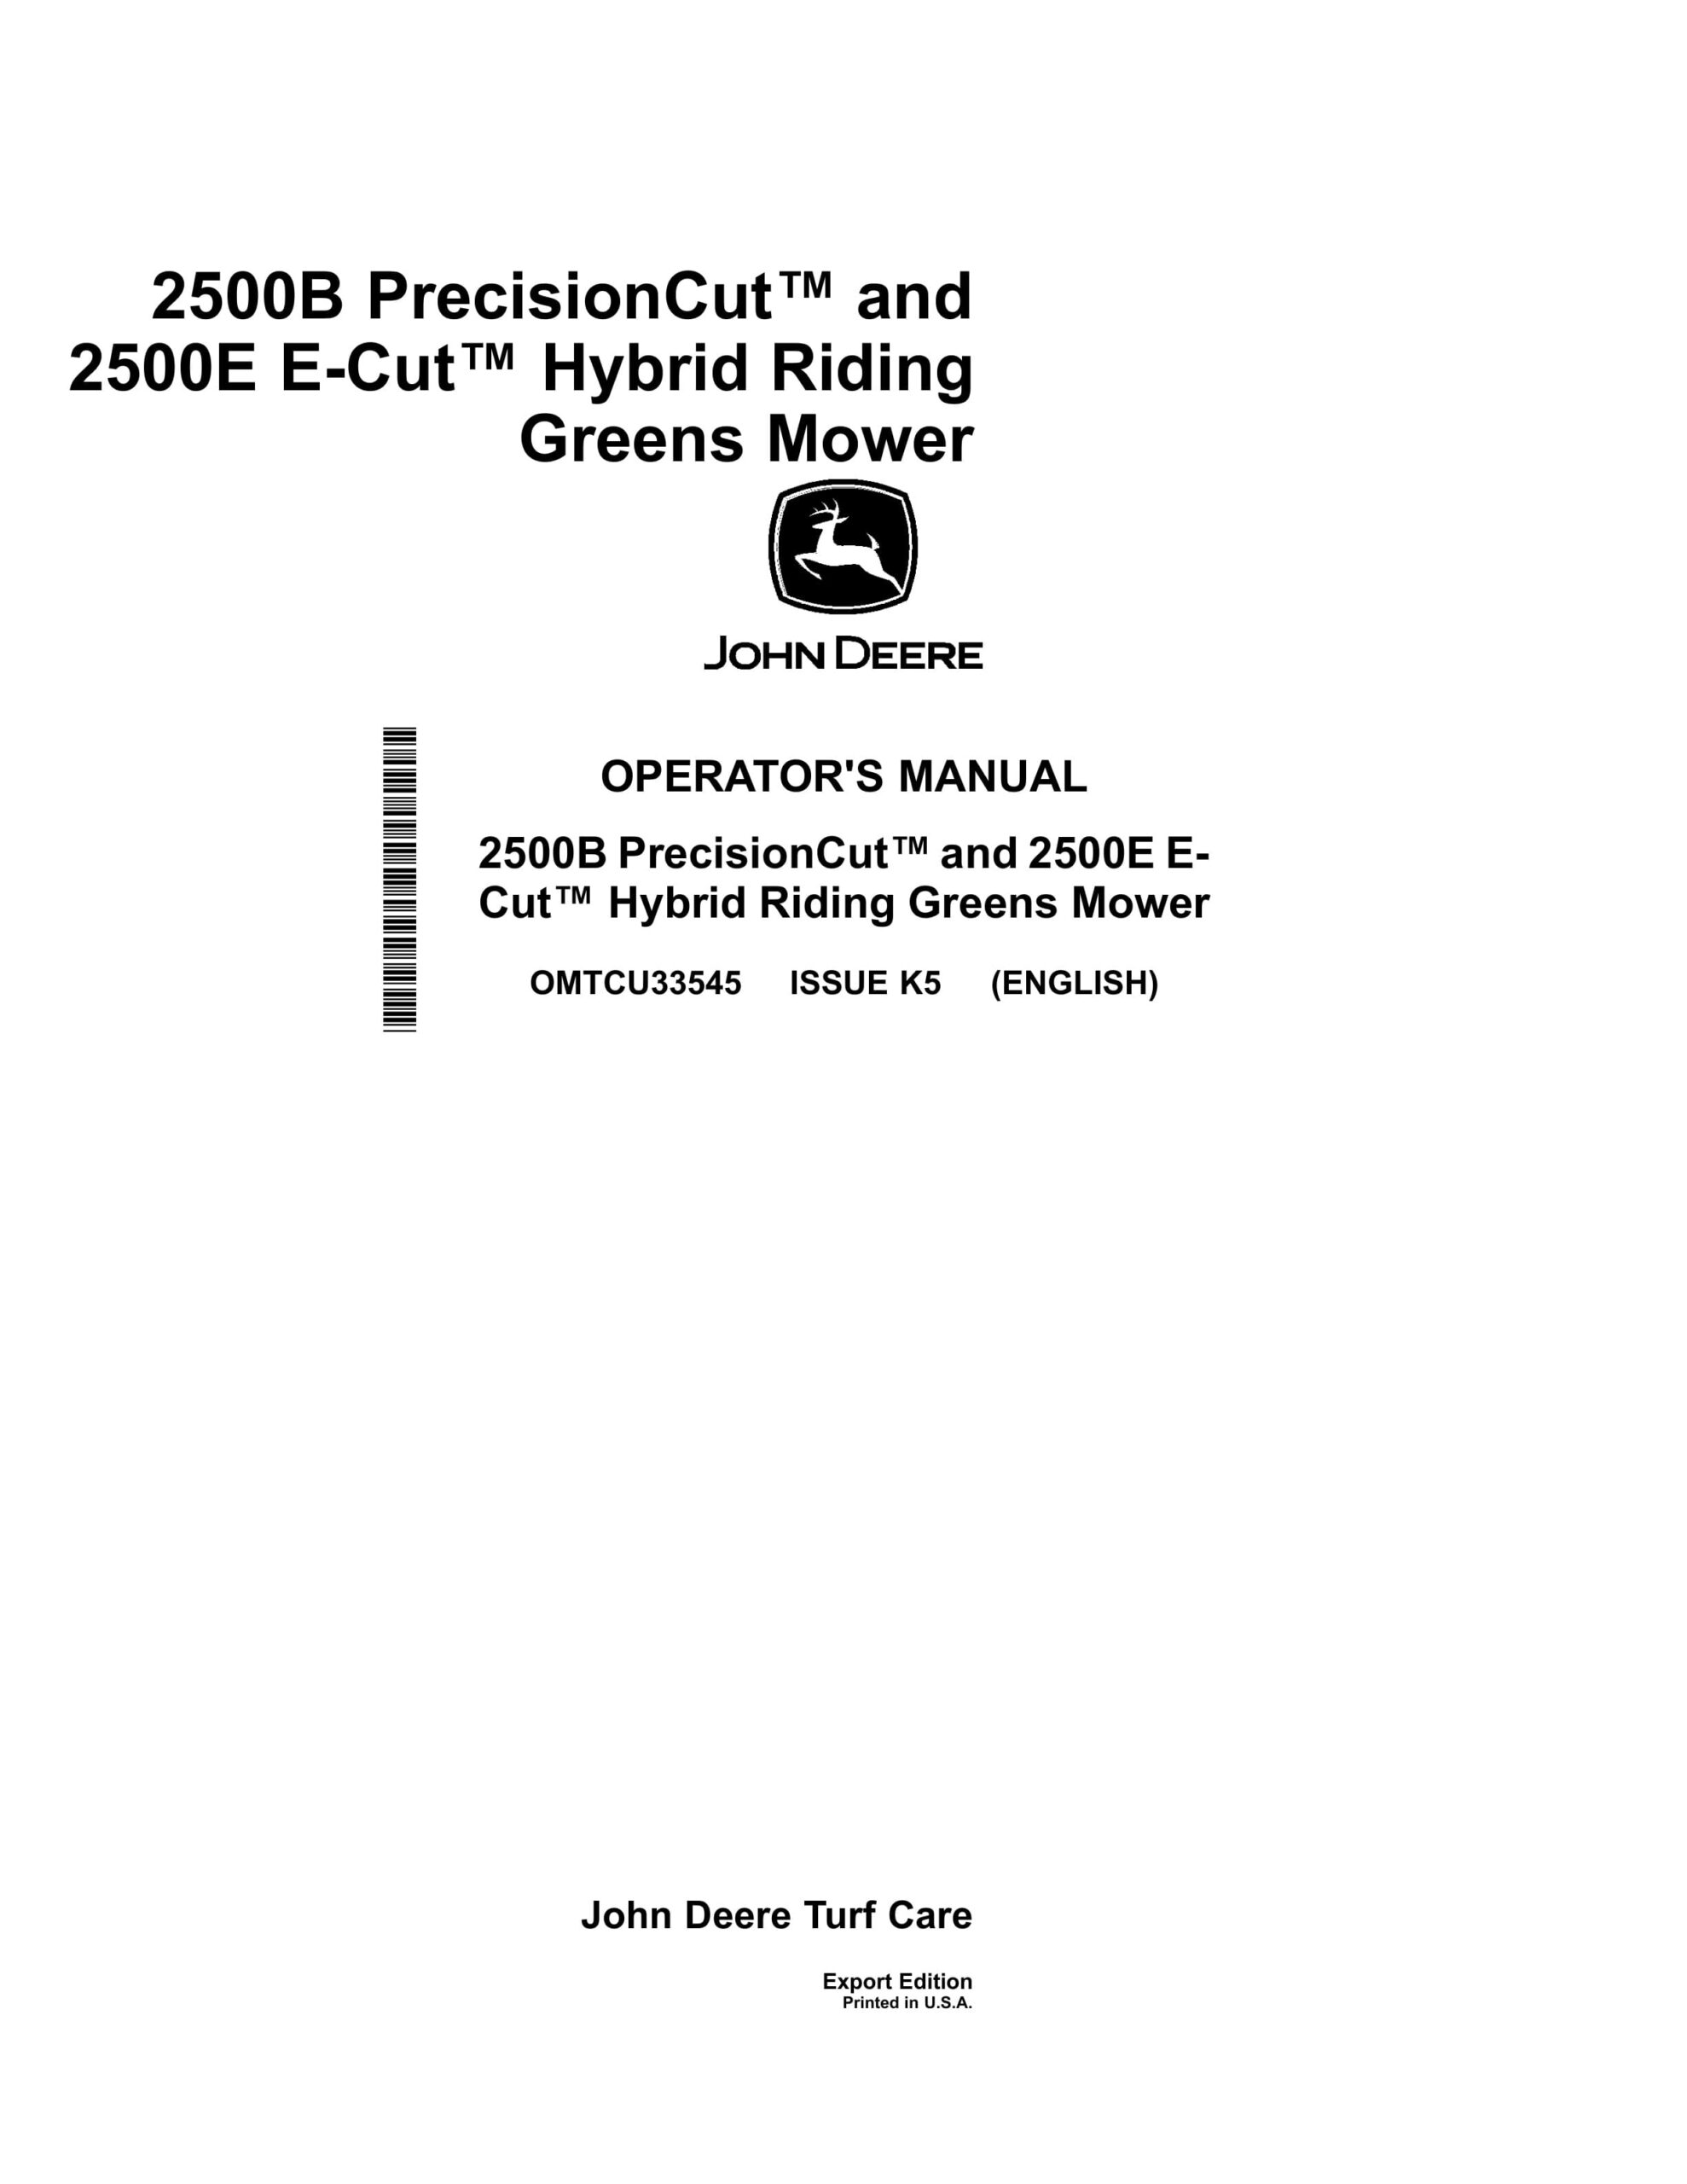 John Deere 2500B PrecisionCut and 2500E E Operator Manual OMTCU33545-1